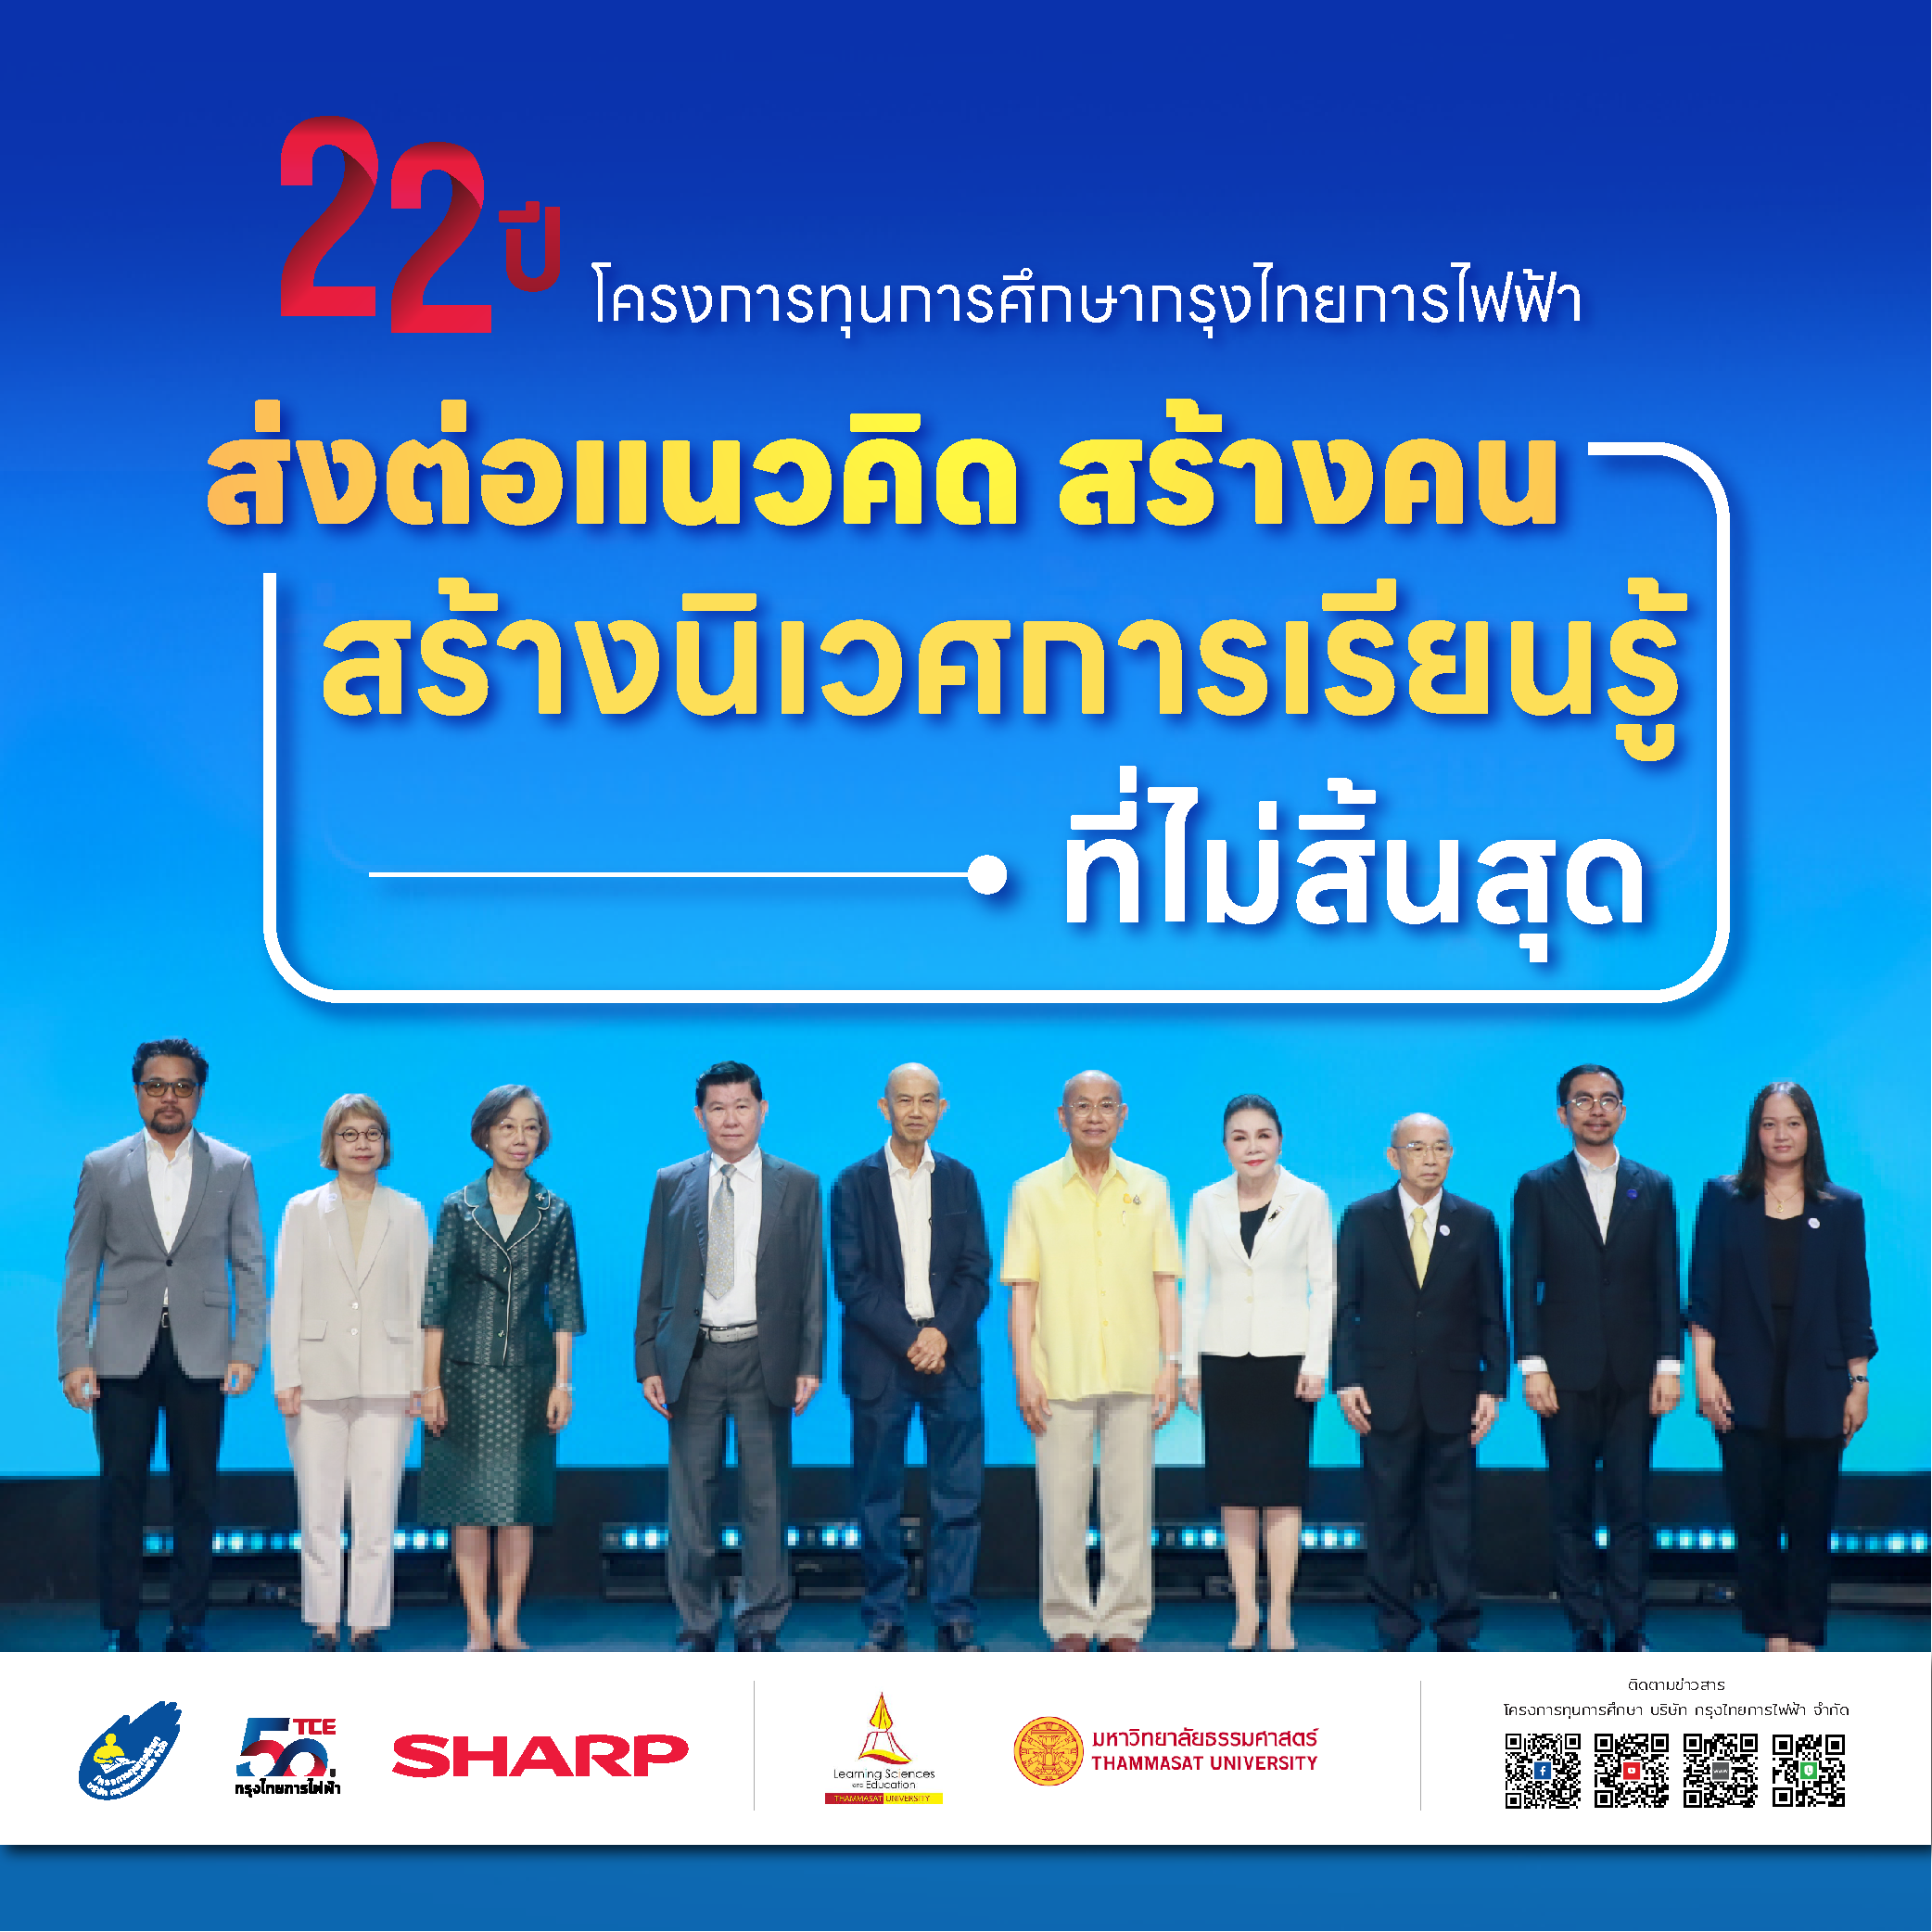 22 ปี โครงการทุนการศึกษากรุงไทยการไฟฟ้า “ส่งต่อแนวคิด สร้างคน สร้างนิเวศการเรียนรู้ที่ไม่สิ้นสุด”